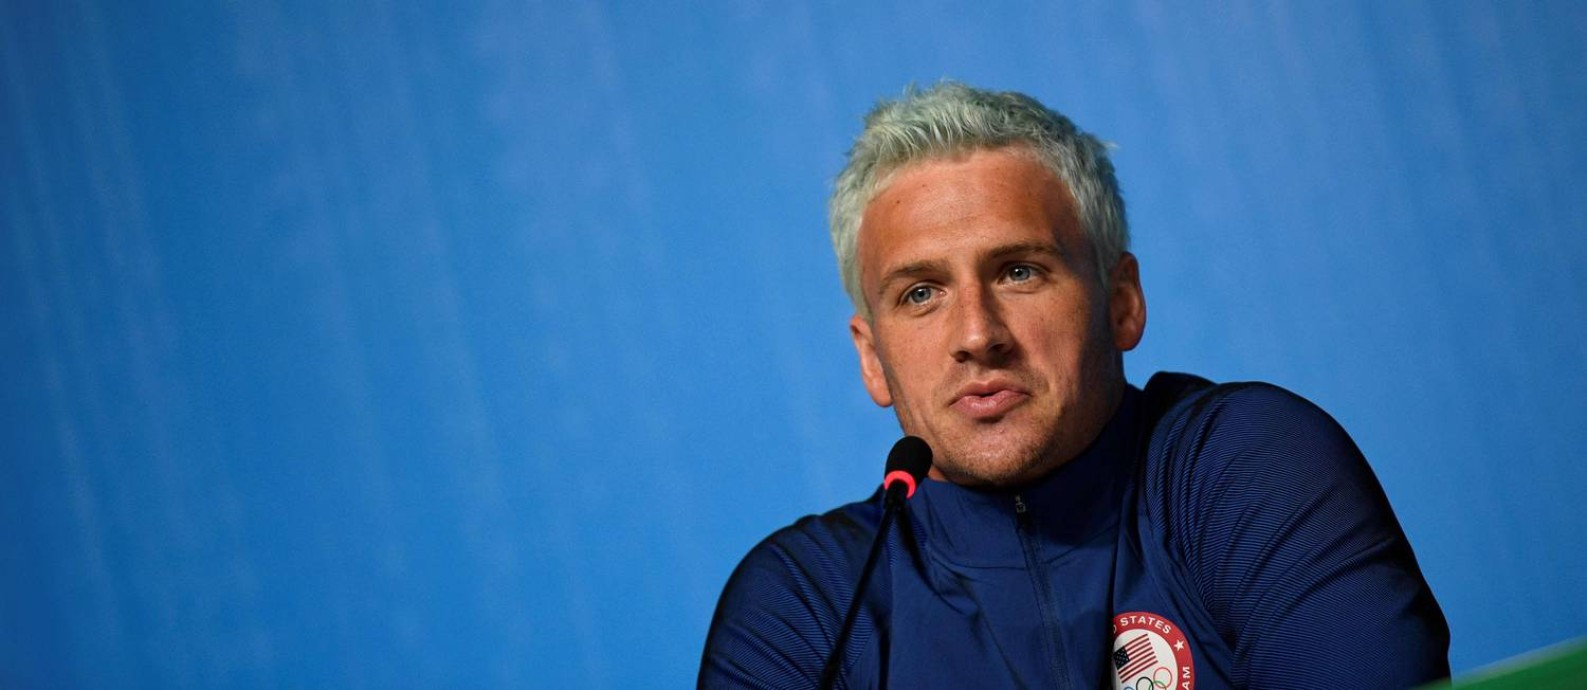 Ryan Lochte deve sofrer uma punição do Comitê Olímpico americano Foto: MARTIN BUREAU / AFP